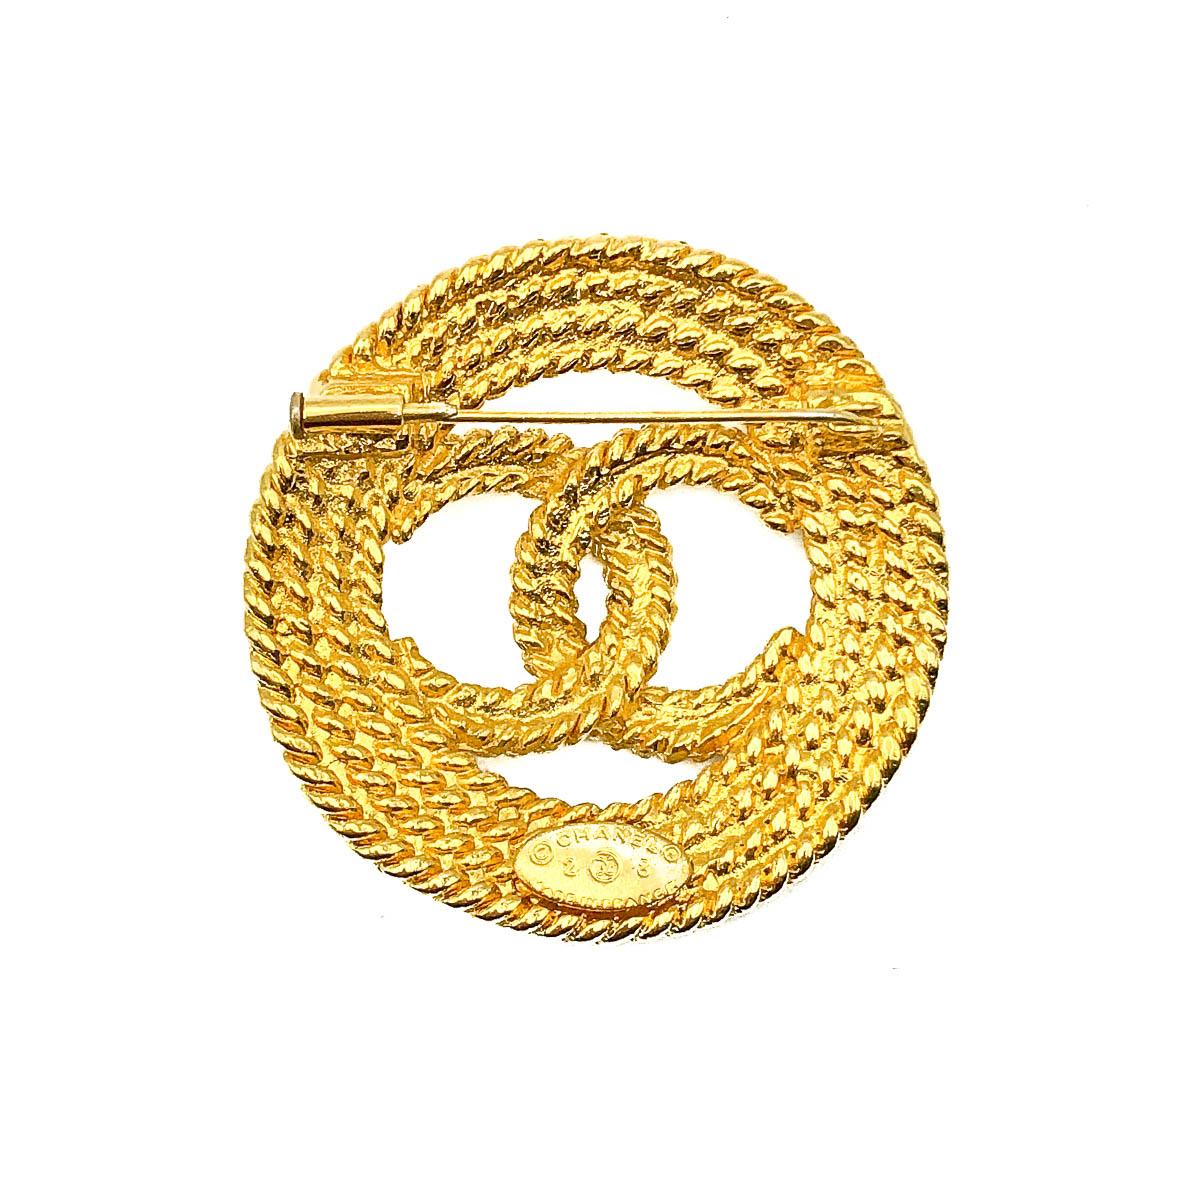 Une magnifique broche Vintage Chanel CC Rope Brooch datant des années 1980 et des premières années de Karl Lagerfeld et Victoire de Castellane à la tête des bijoux fantaisie pour Chanel. Le logo CC emboîté de Coco Chanel, dans un motif de corde